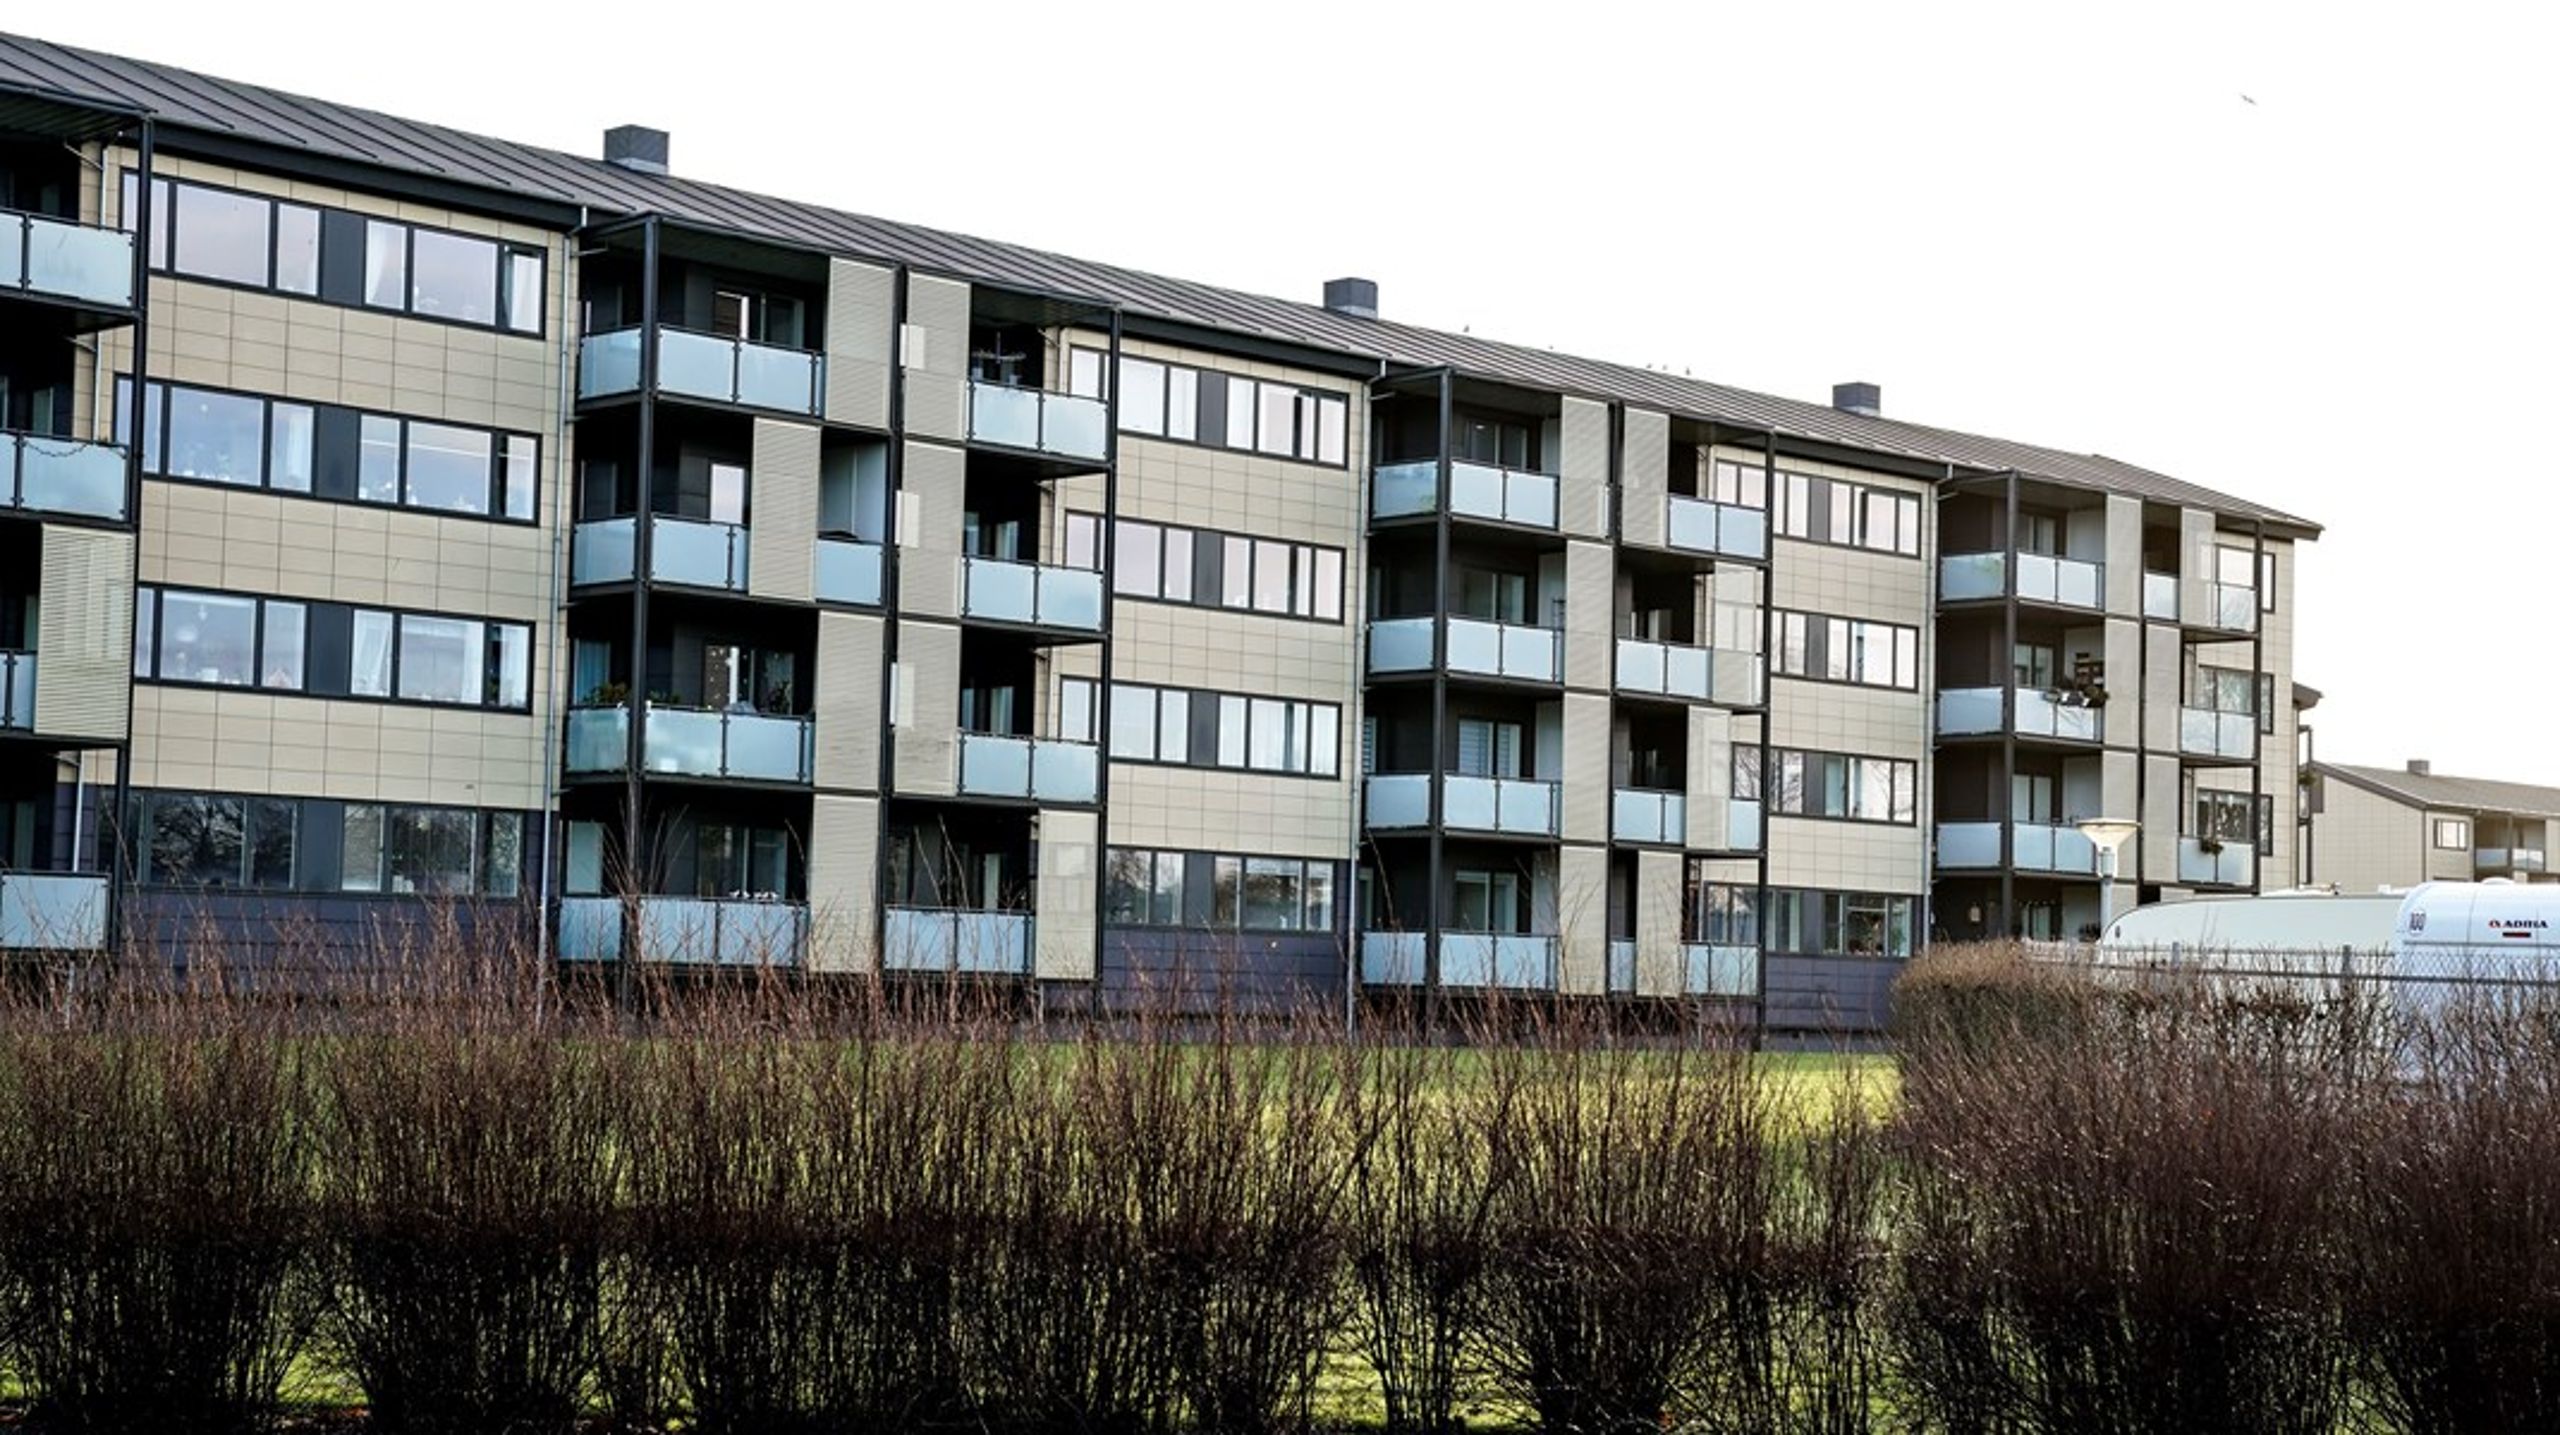 Blandt de godt 100 byggerier, som er DGNB-certificerede, er
der en meget stor del almene boliger og kommunale byggerier, hvor man har
skullet holde sig inden for rammebeløbet, skriver Mette Qvist.